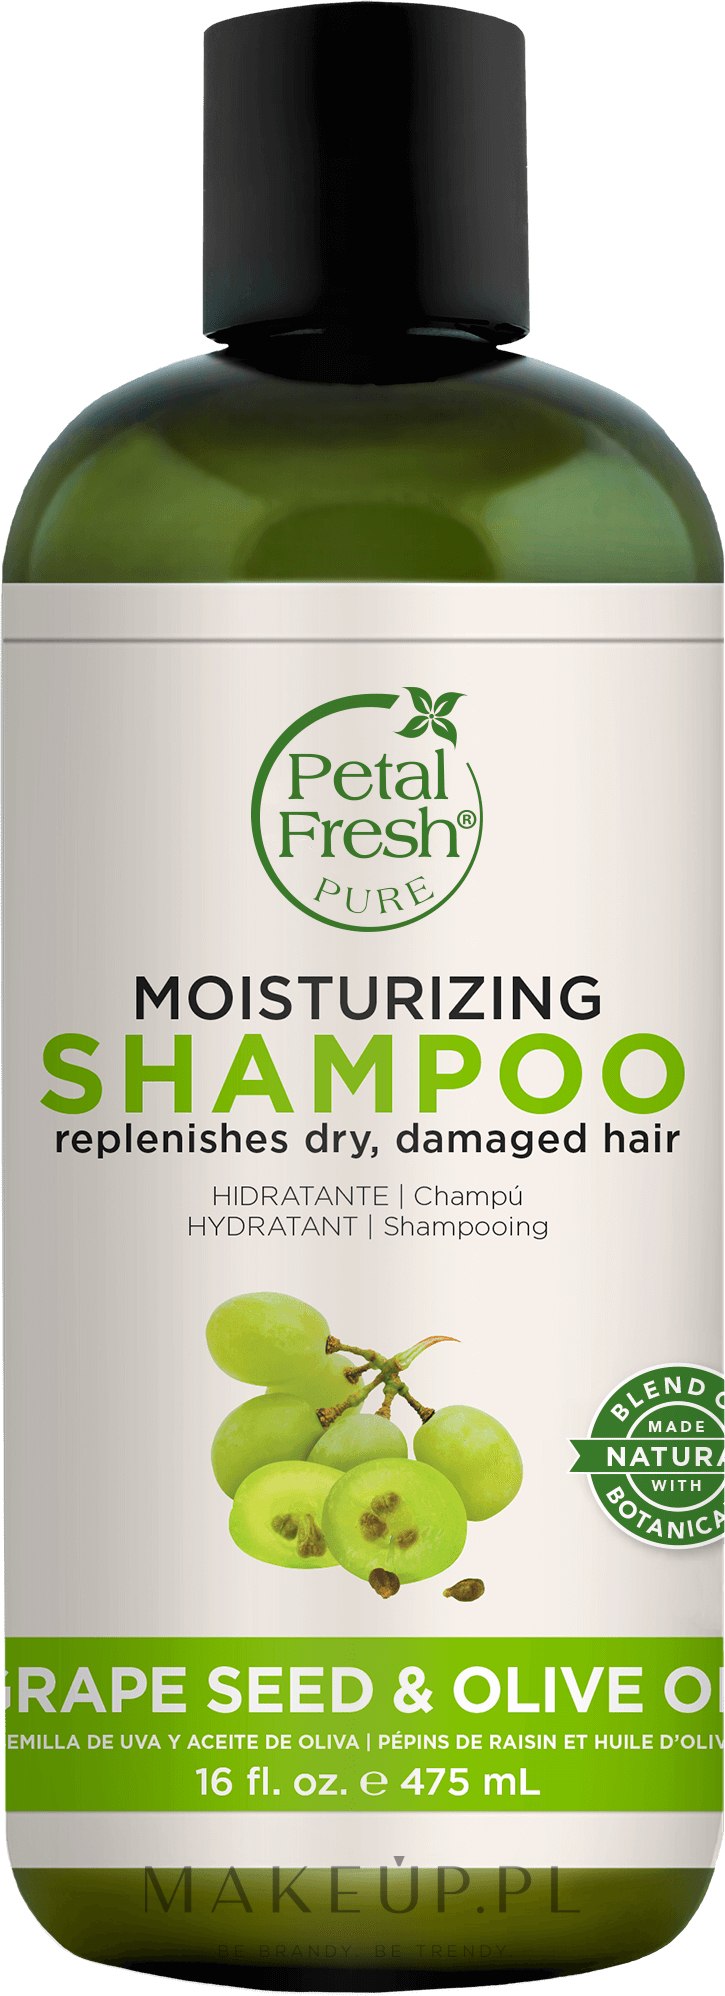 petal fresh pure szampon drzewo herbaciane